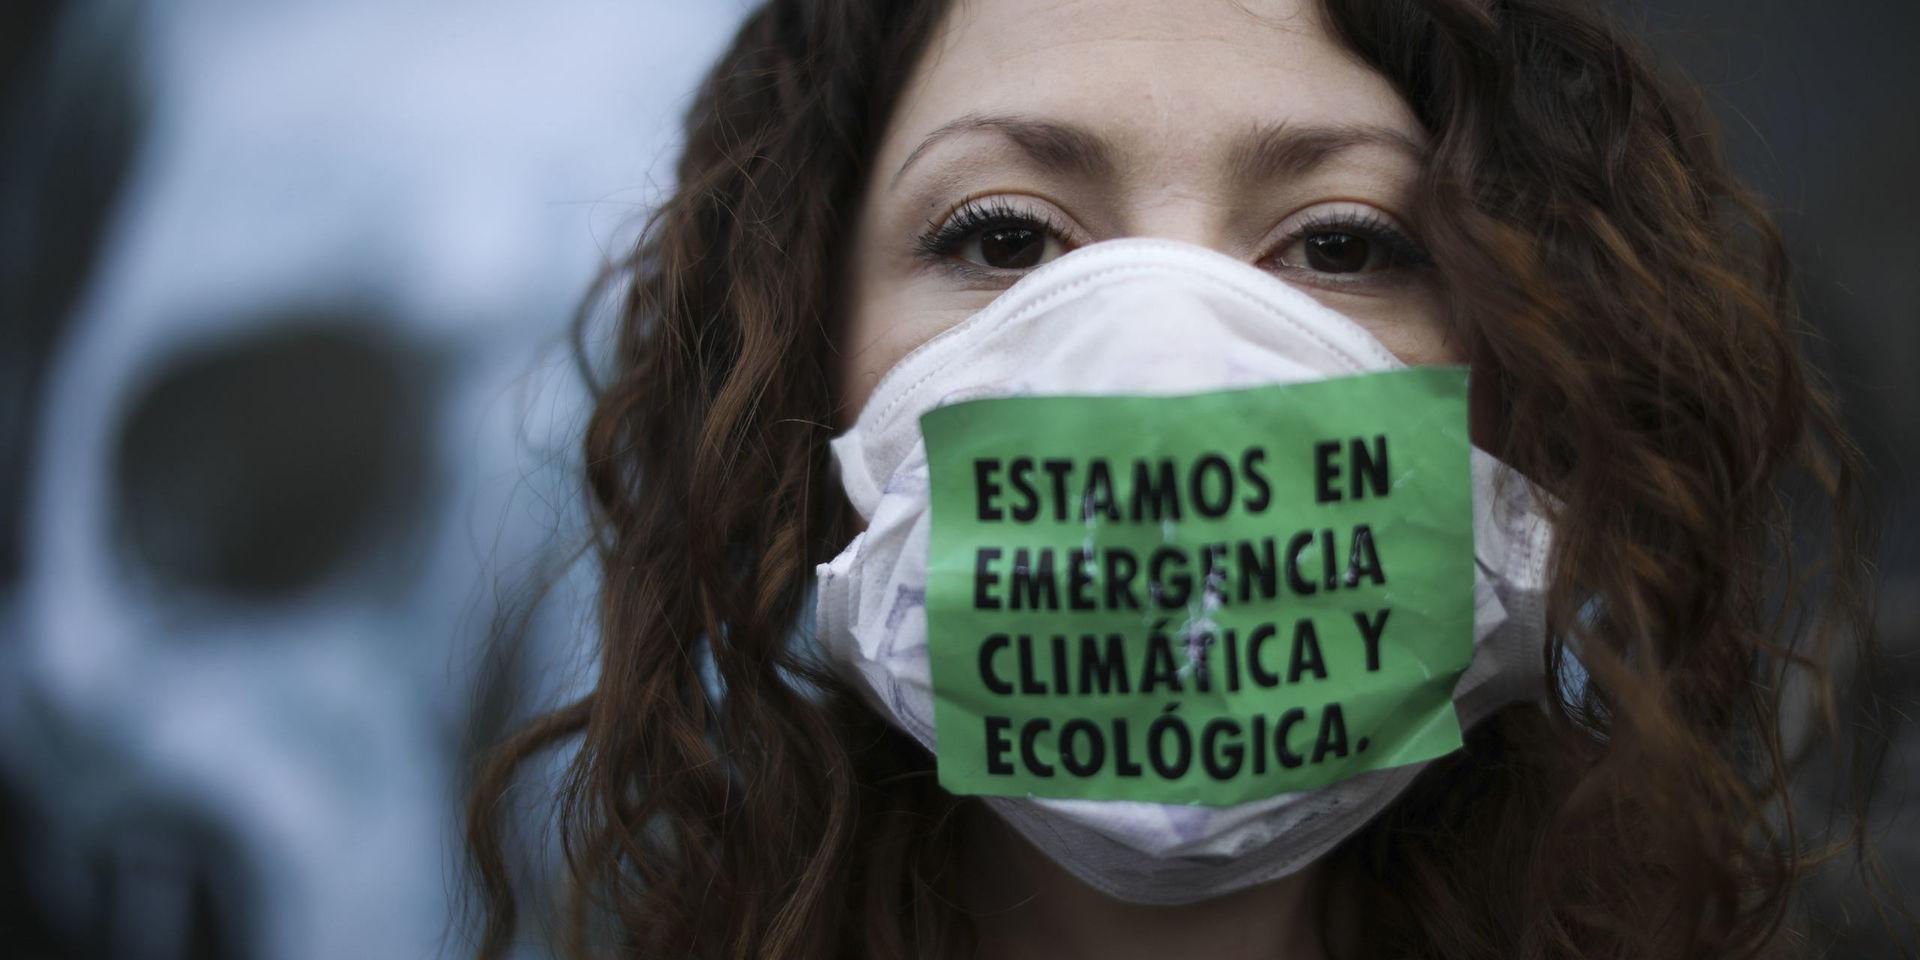 'Vi är i ett nödläge för klimatet och ekologin' står det på ansiktsmasken som en demonstrant bär vid demonstrationer utanför Brasiliens ambassad i Argentinas huvudstad Buenos Aires i augusti i år. Demonstranterna uppmanade specifikt Brasiliens president Jair Bolsonaro att skydda regnskogen i Amazonas.